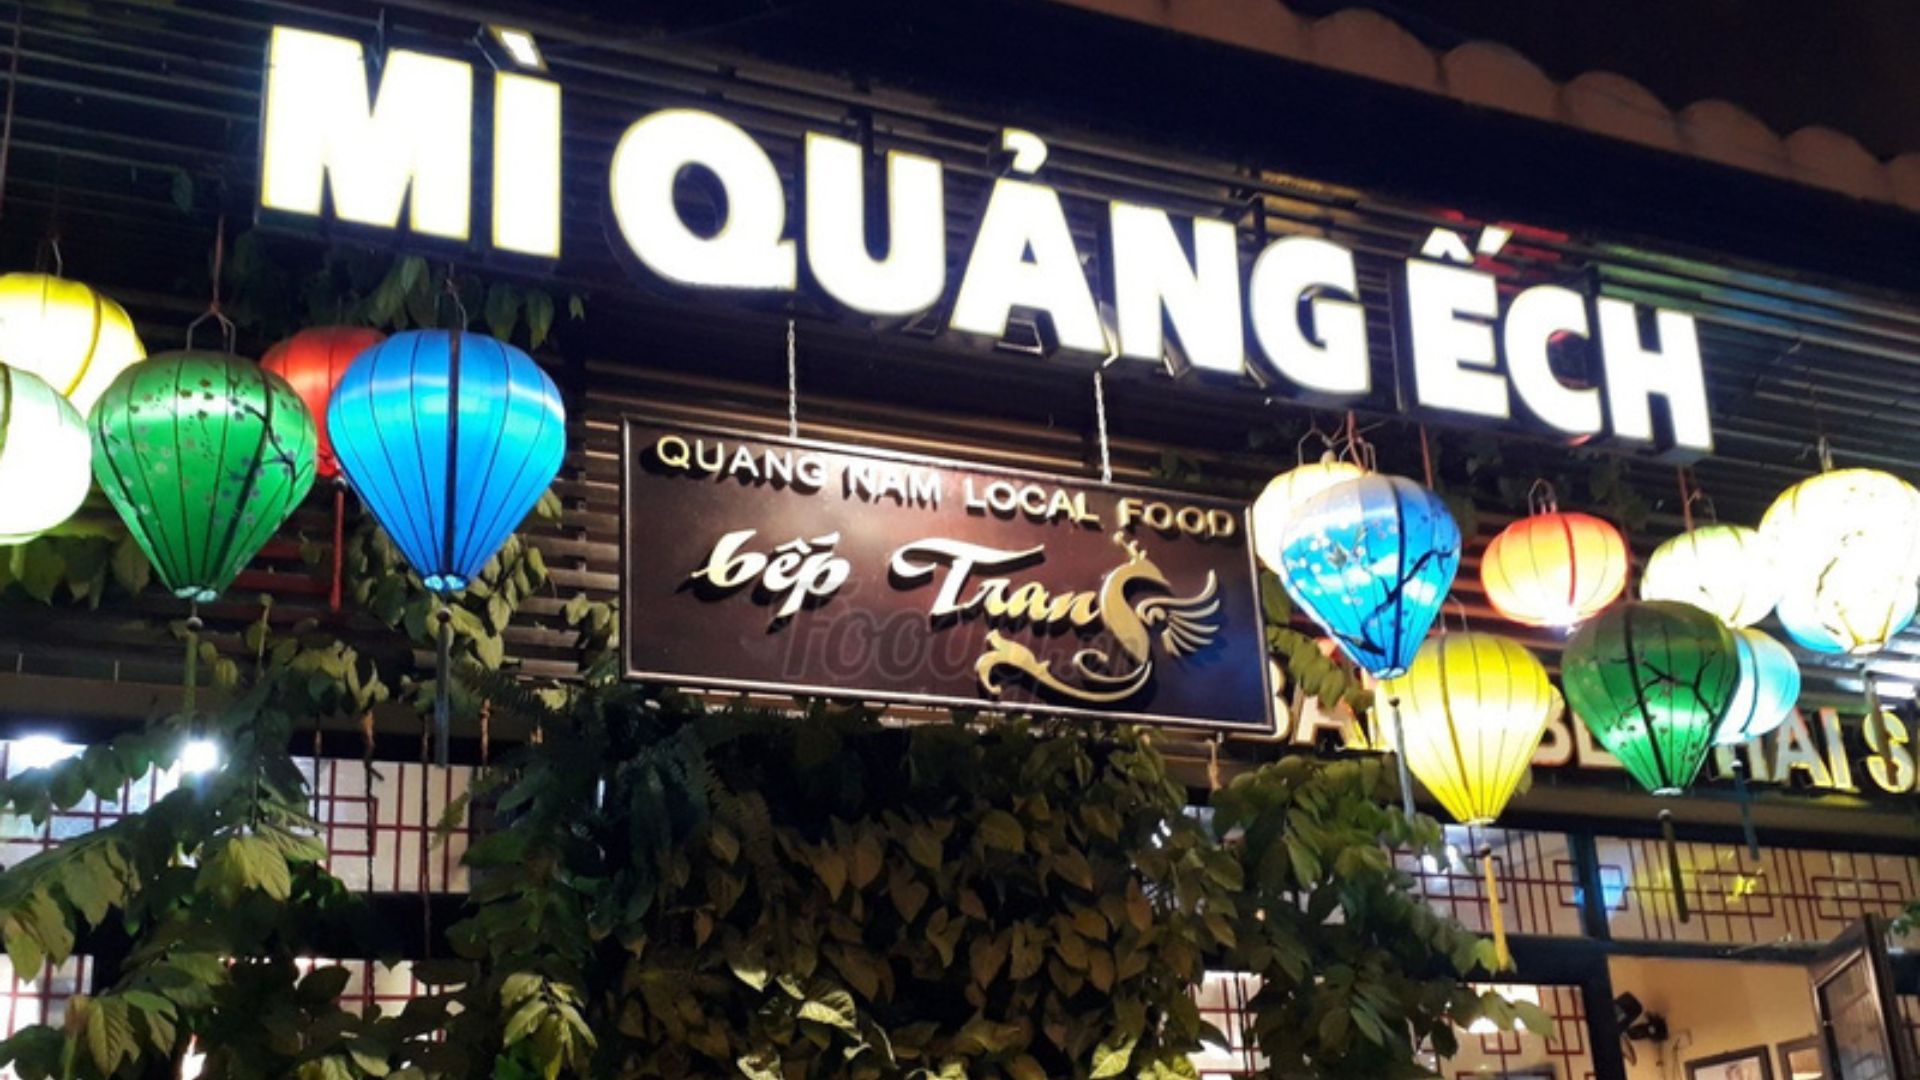 Đến Đà Nẵng mà không ghé thử Mì quảng ếch Bếp Trang thì đừng vội về